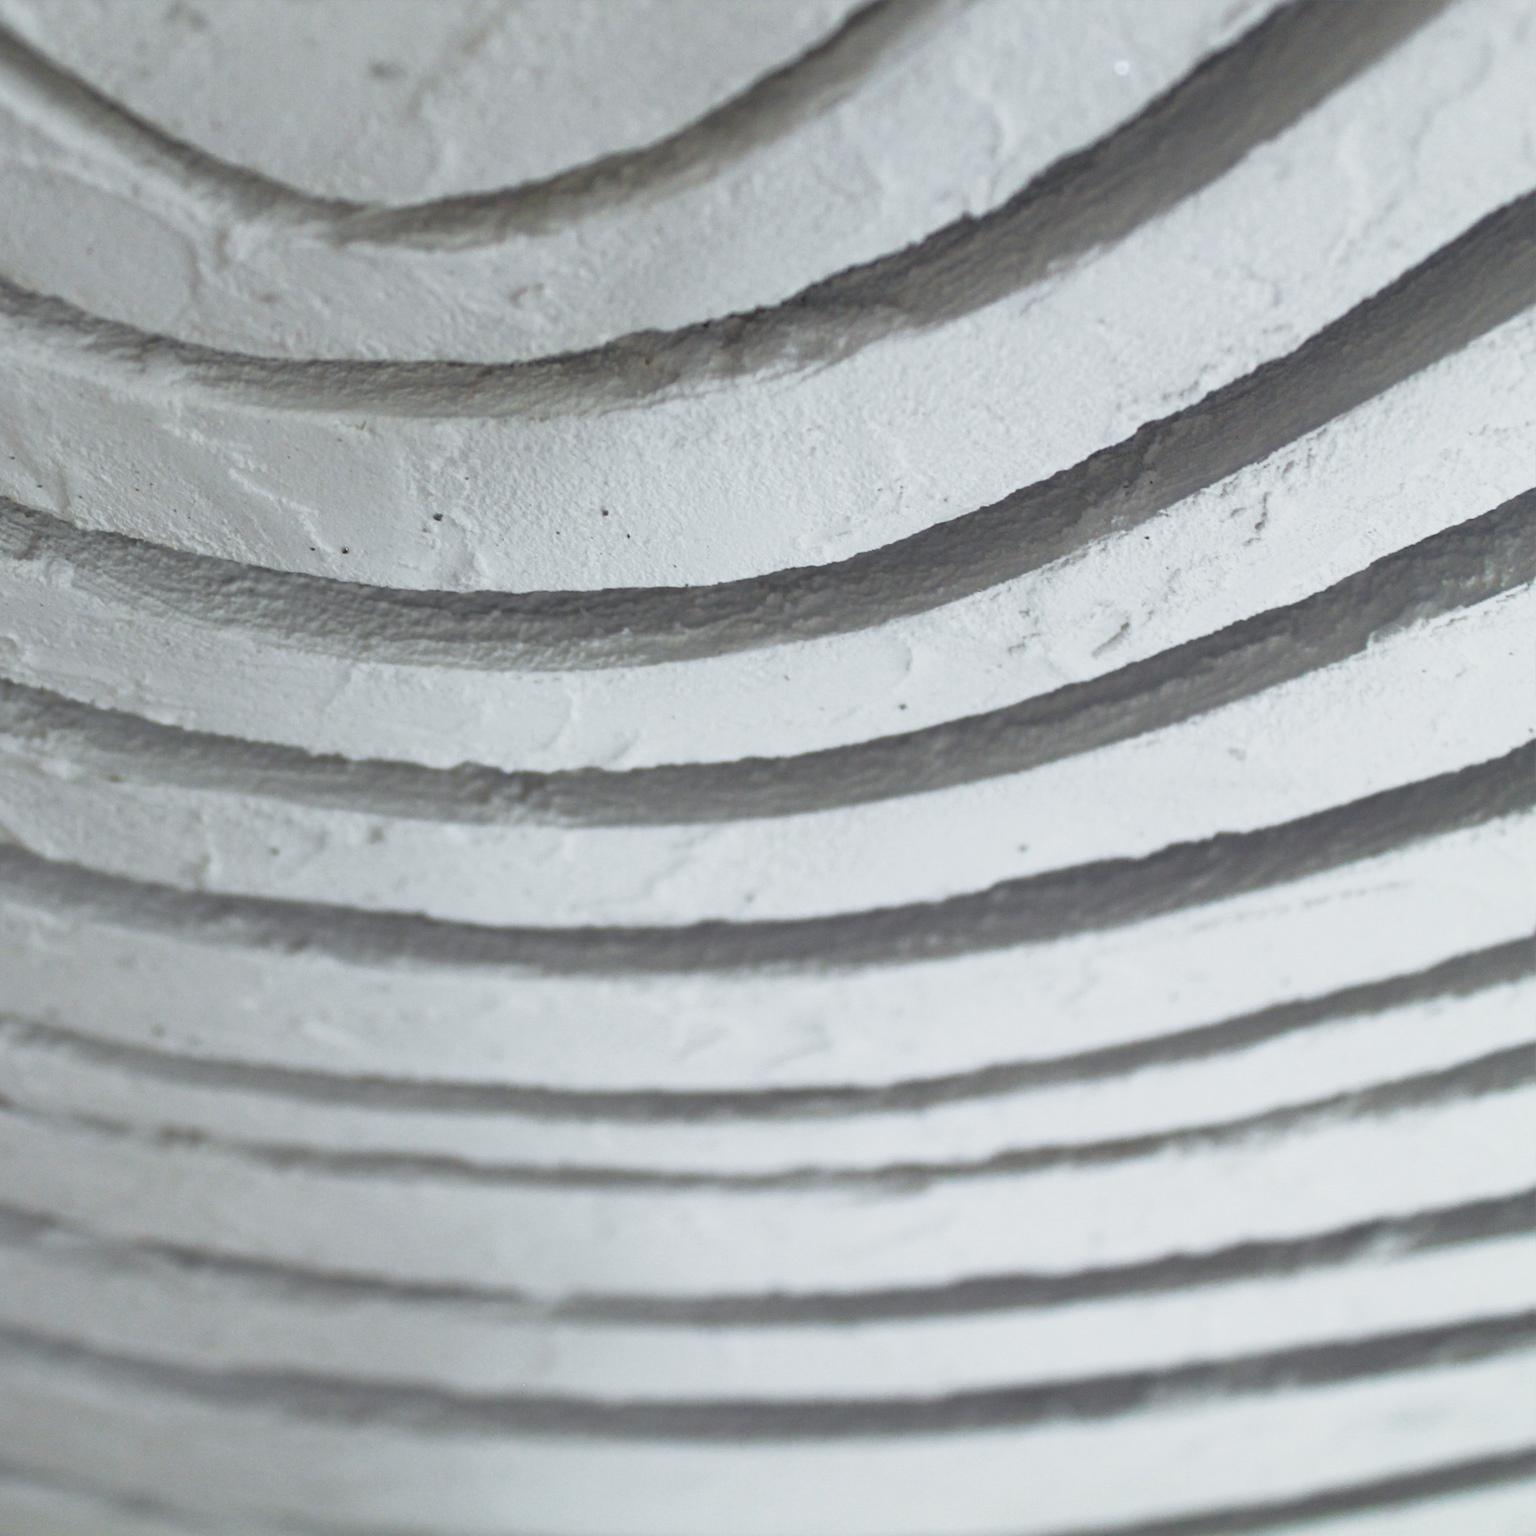 YVES und WAVES. In der Natur, in Sandstrukturen, in zeitgenössischer Kunst.  (Braun), Abstract Sculpture, von Arozarena De La Fuente